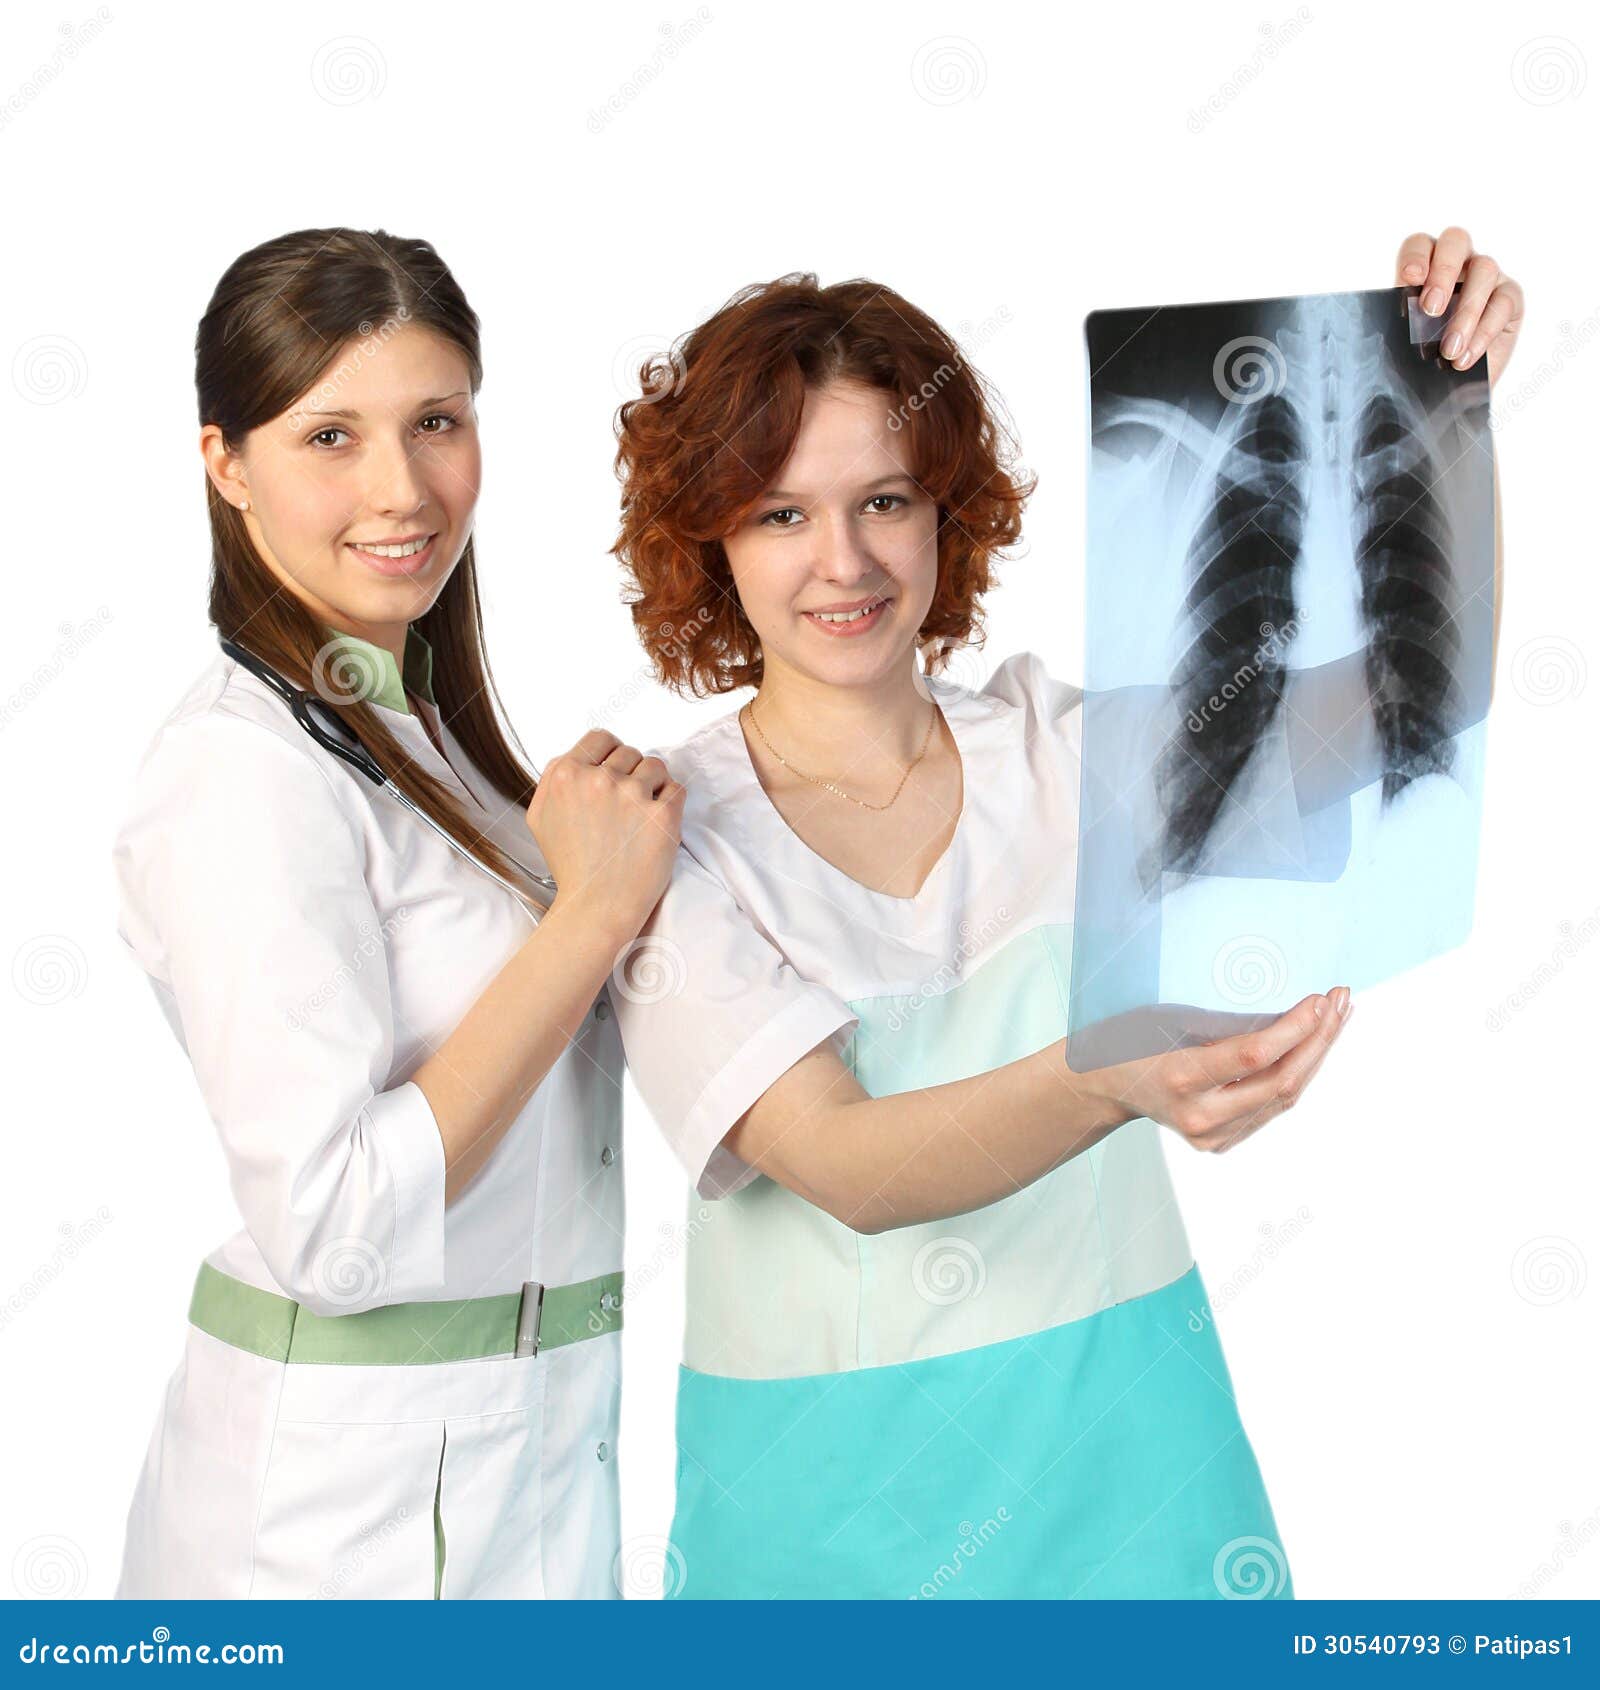 Две женщины врачи. Два врача женщины. Медсестра с рентгеновским снимком. Медсестра с рентгеном печени. Врач с рентгеновским снимком легких.